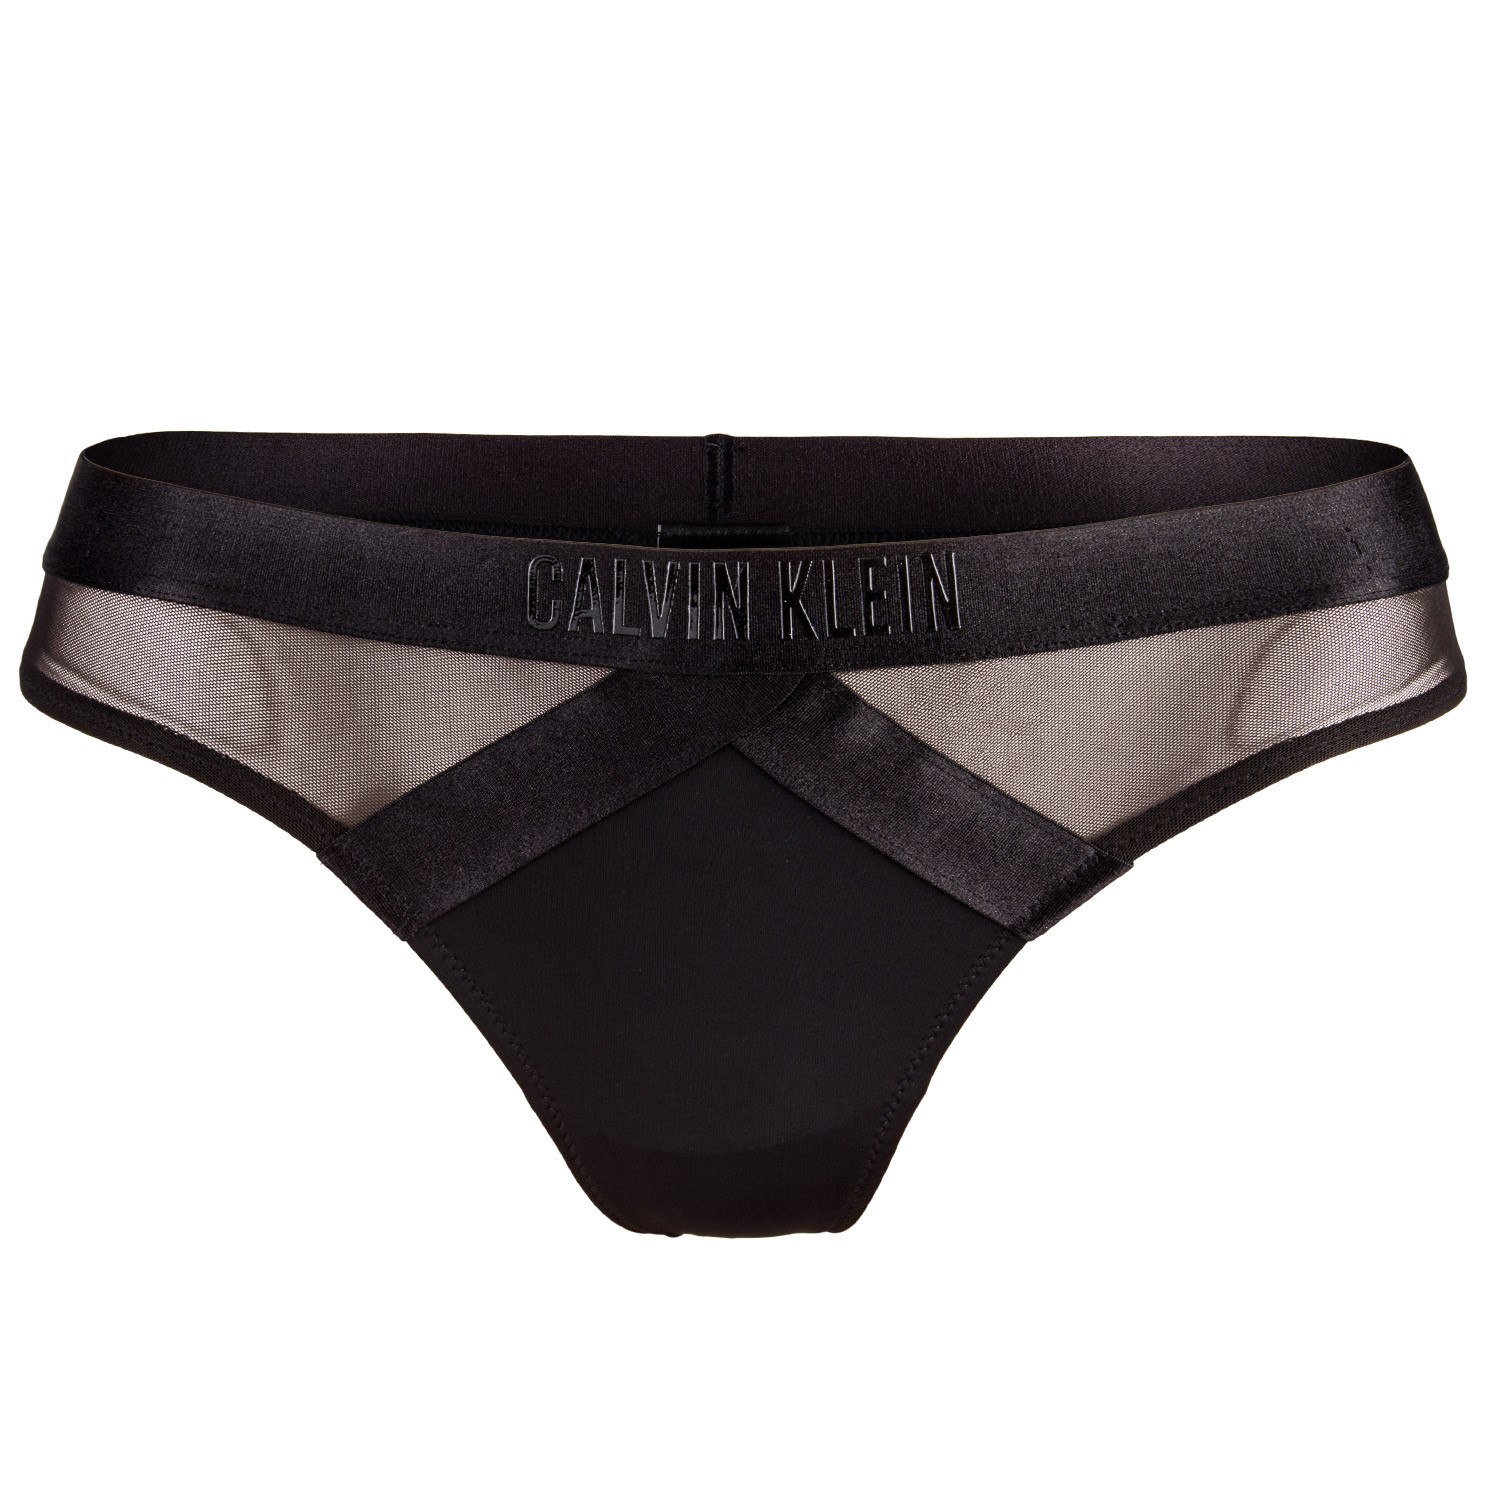 Calvin Klein Limited Edition Underwear Sale, 57% OFF |  www.colegiogamarra.com